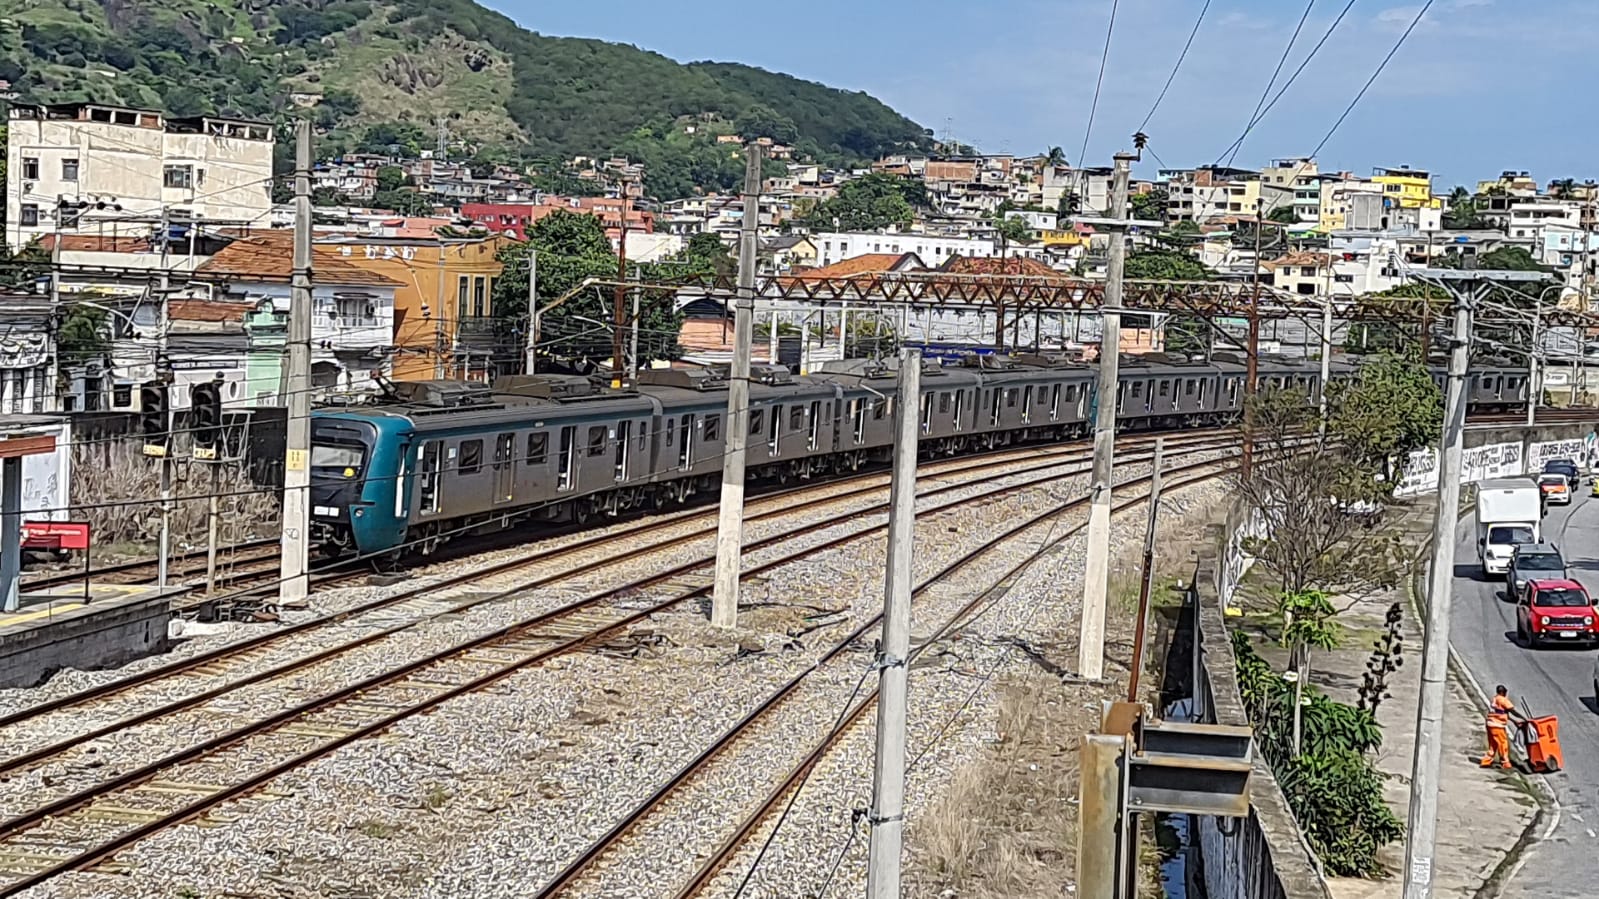 Passageiros da Supervia andam pela linha férrea na estação Quintino após pane em composição